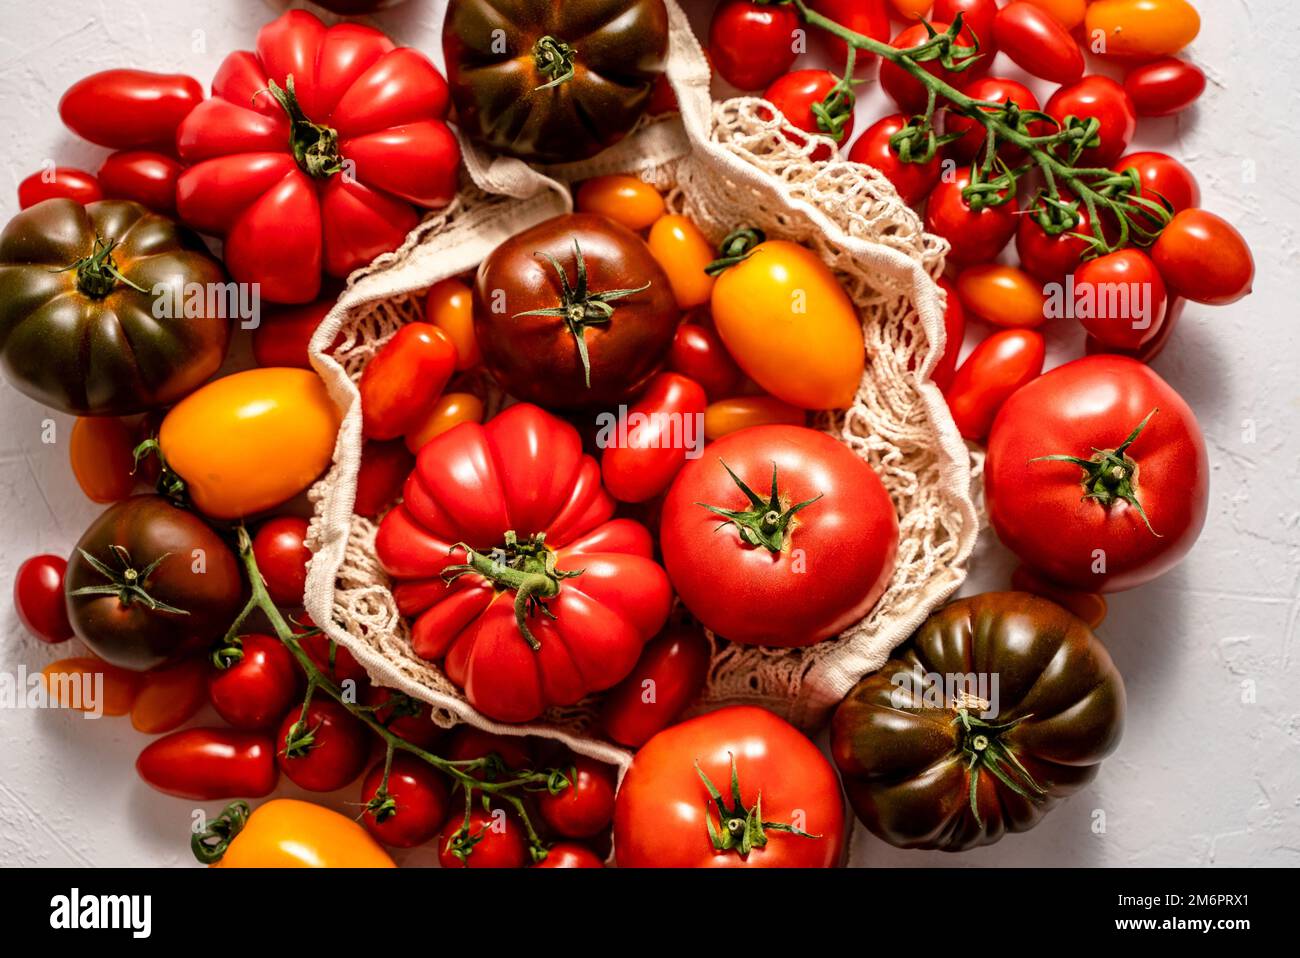 Pomodori sulla tavola. Pomodori di varietà diverse Foto Stock